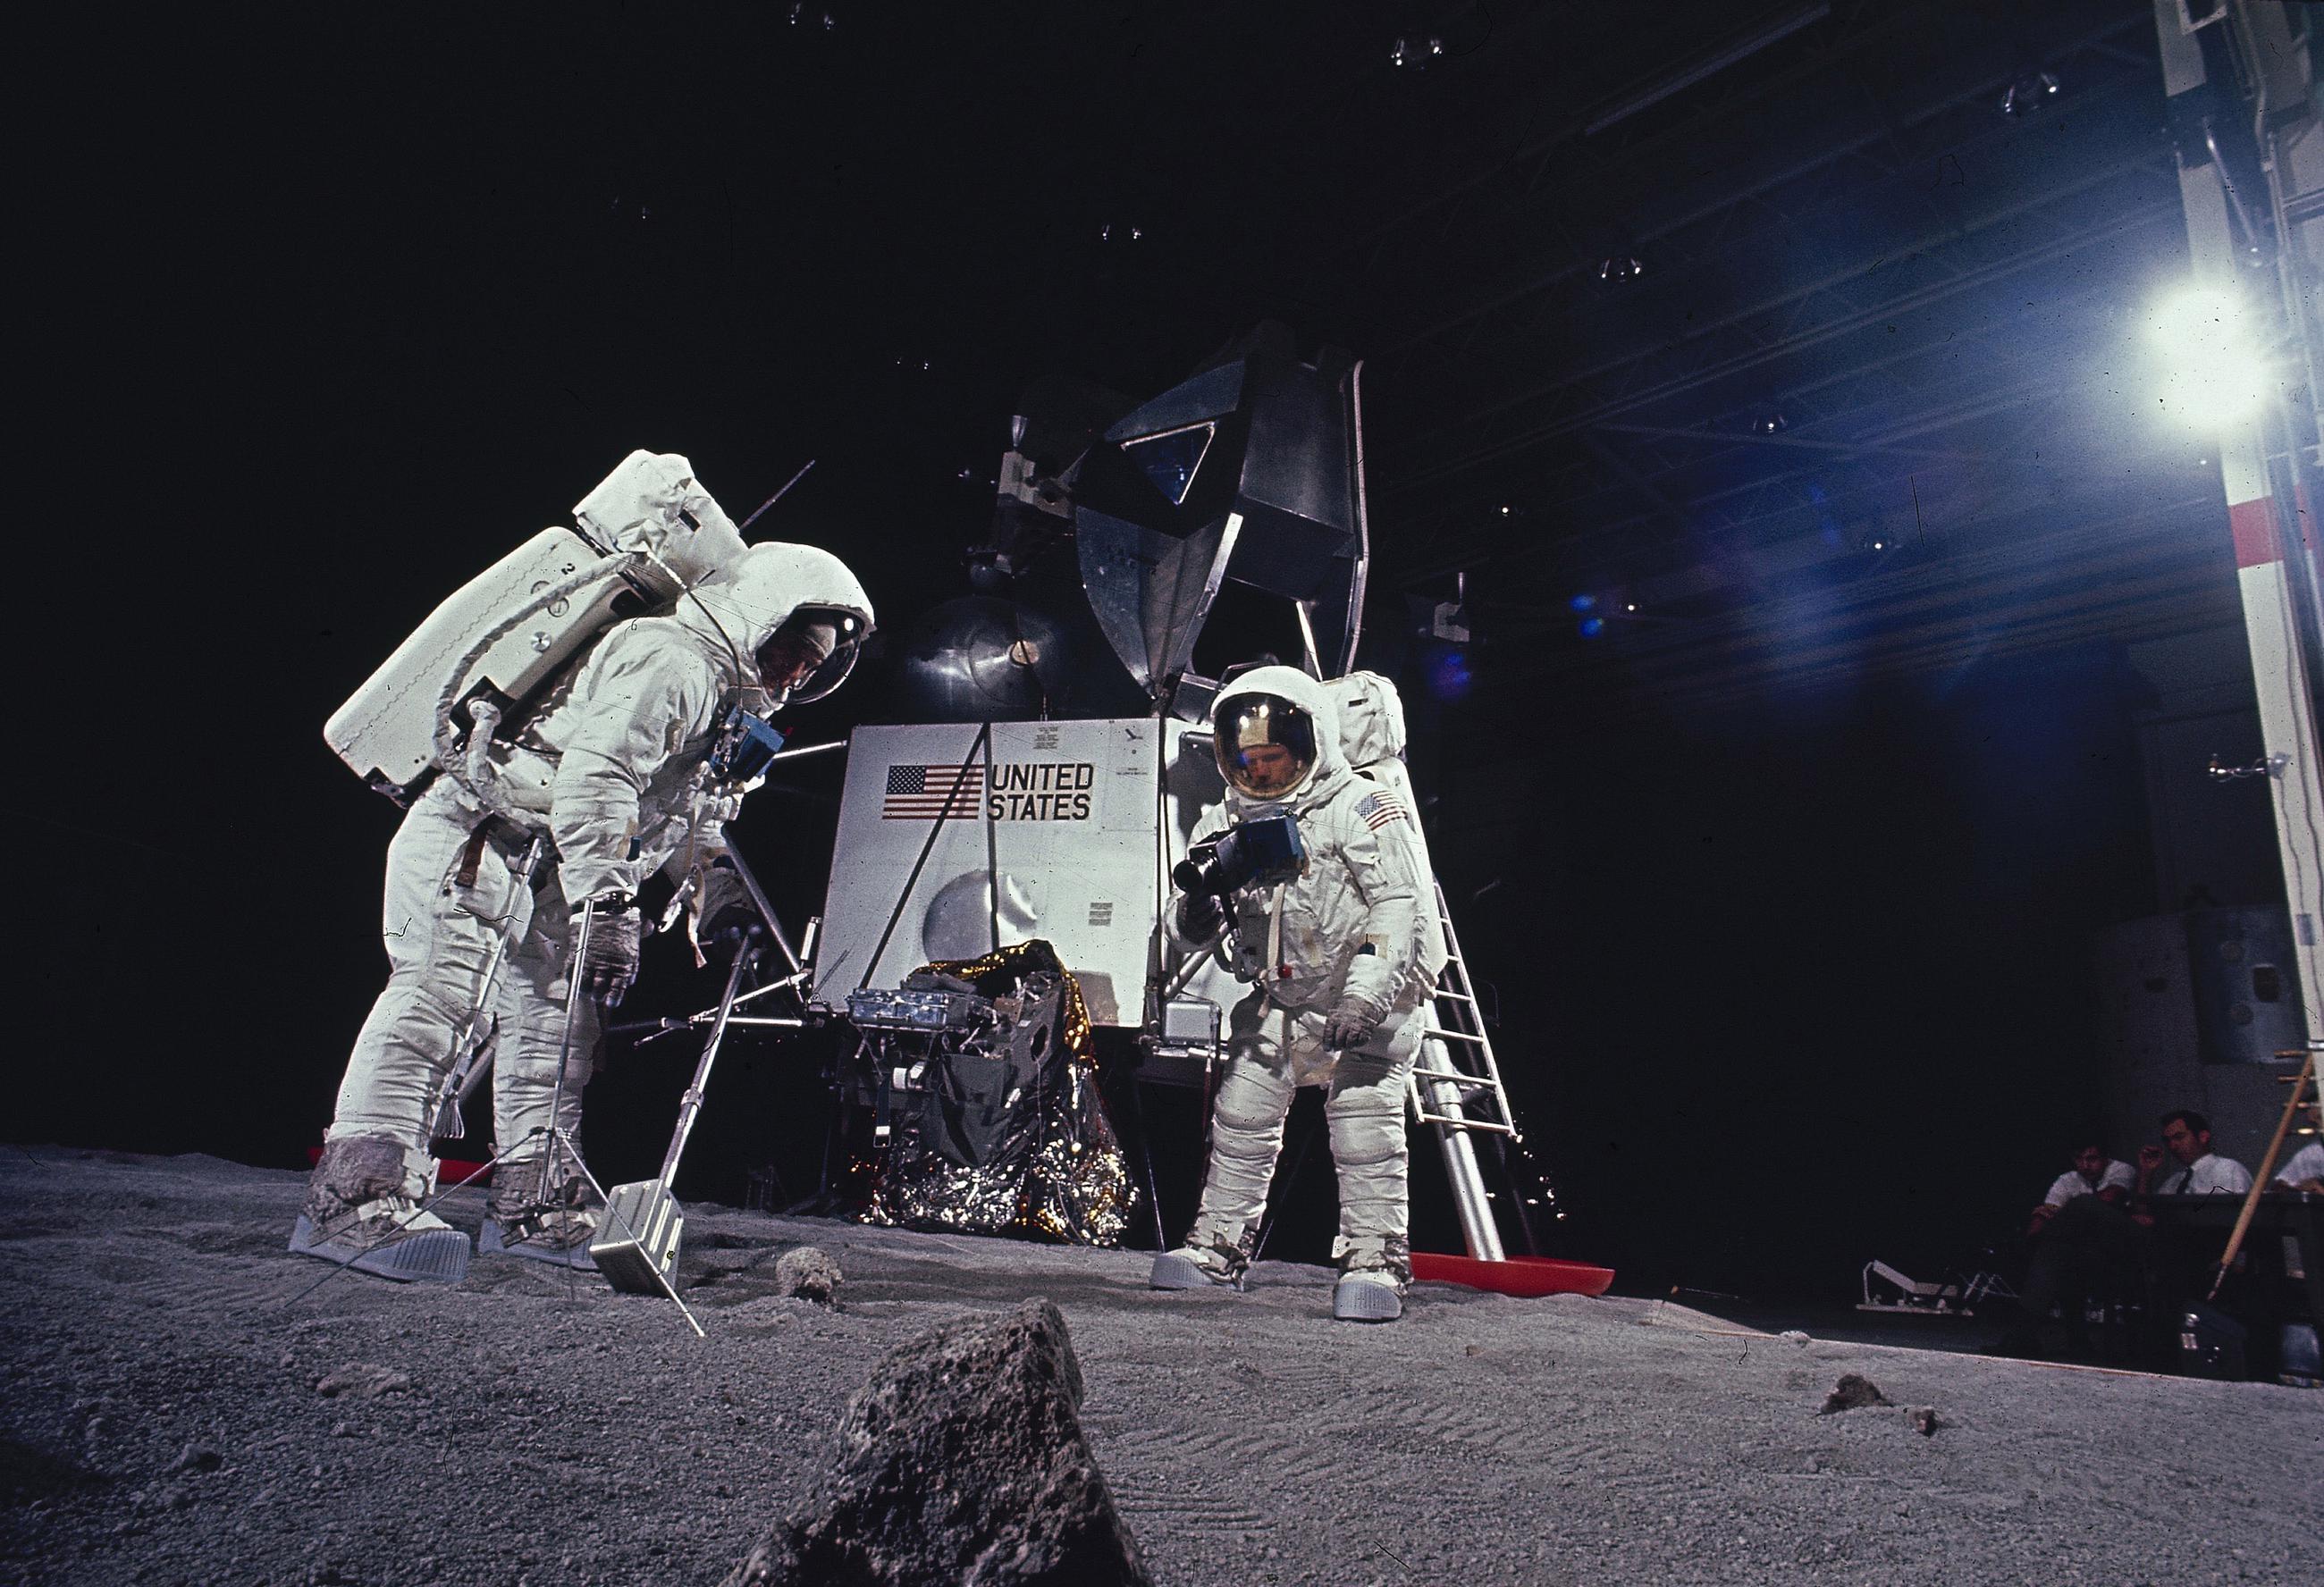 First moon landing